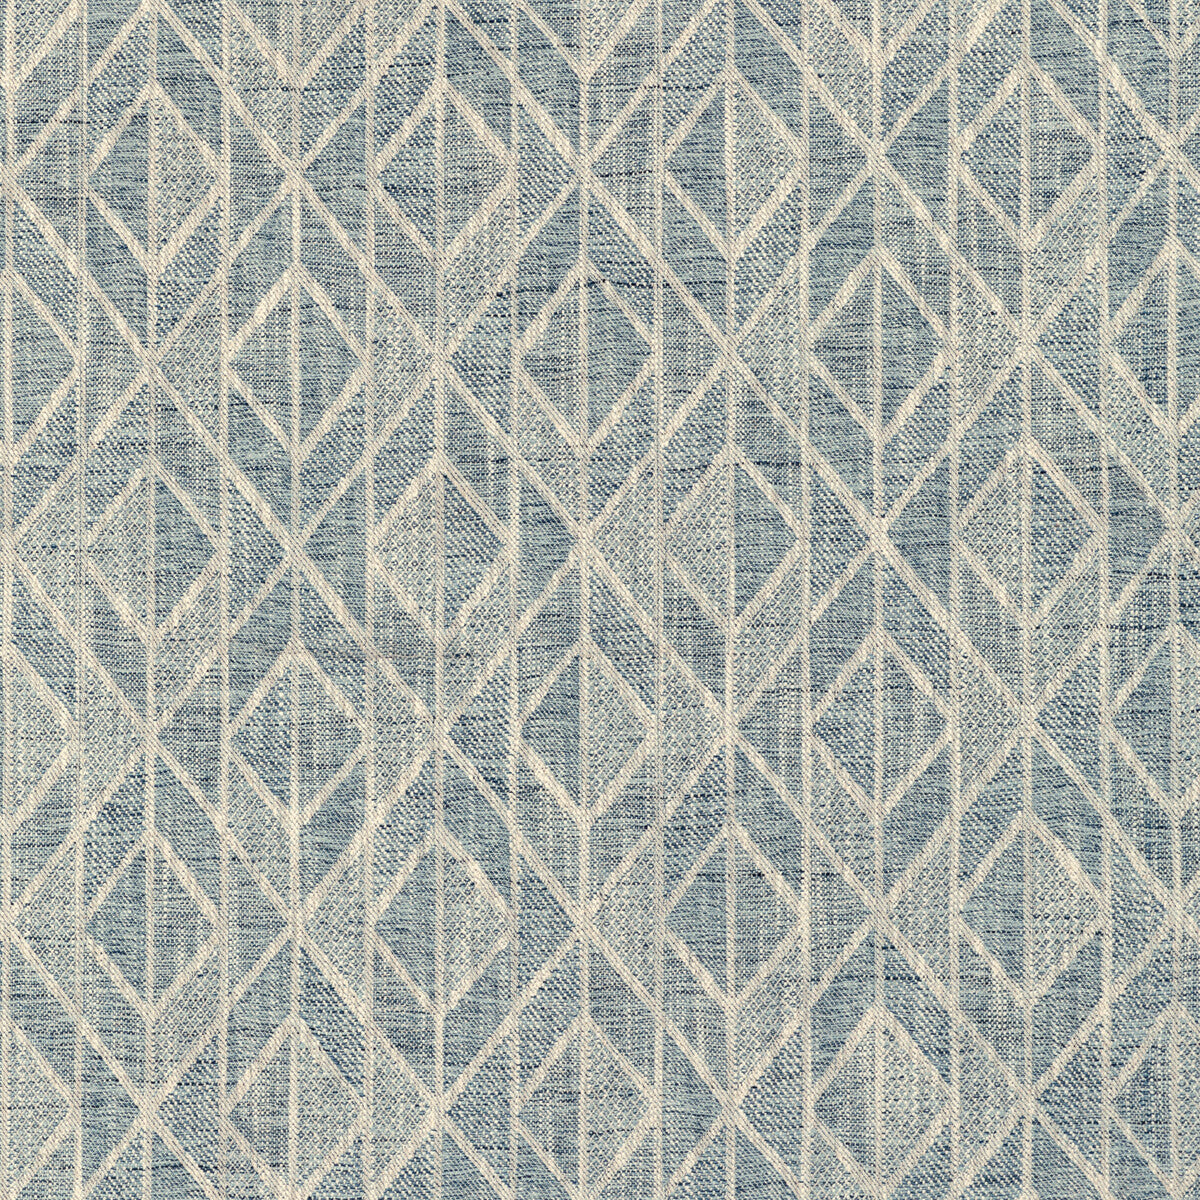 Kravet Design fabric in 36285-115 color - pattern 36285.115.0 - by Kravet Design